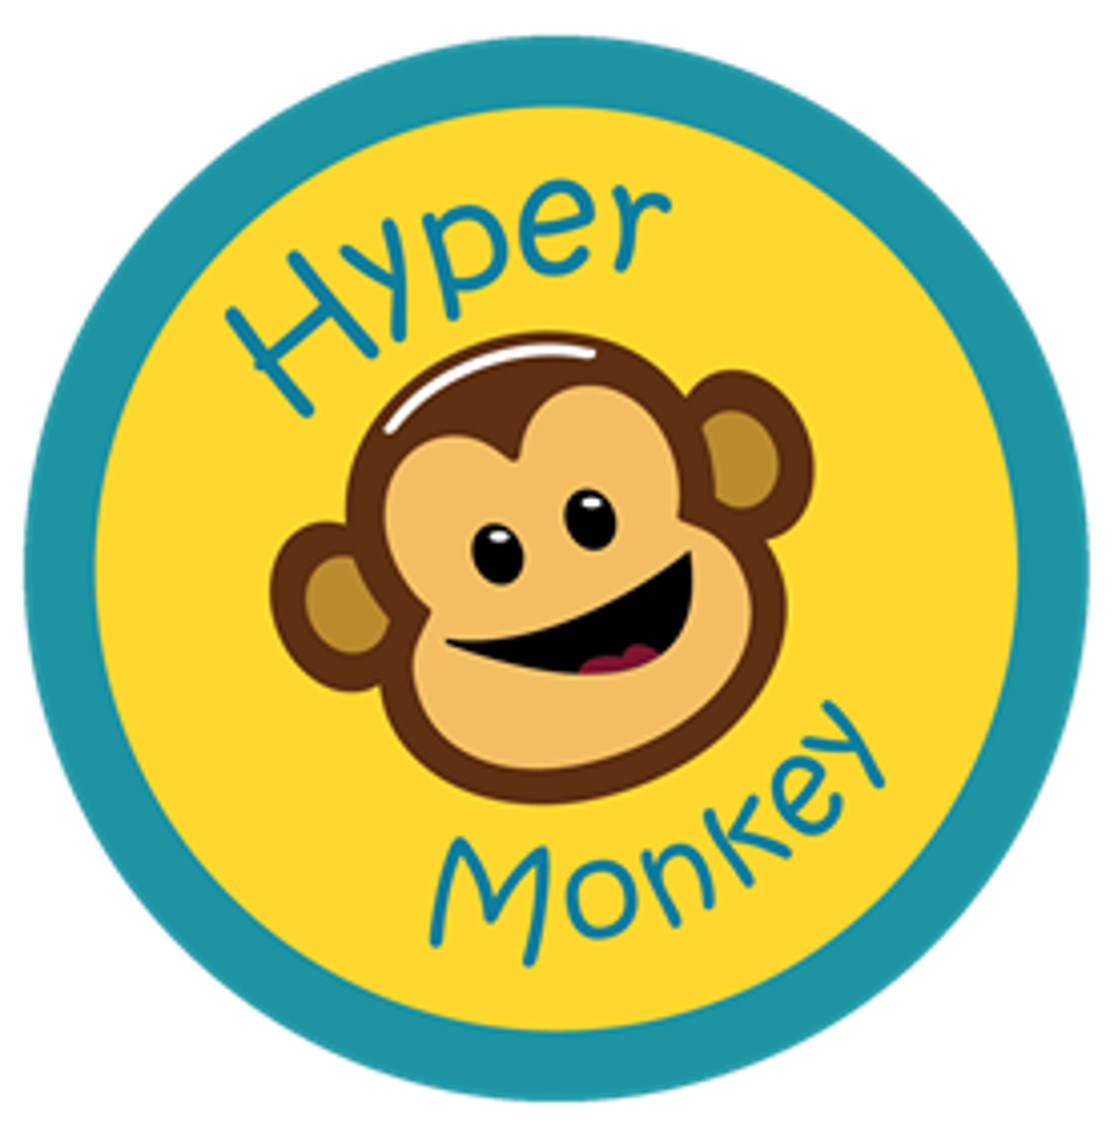 The Hyper Monkeys